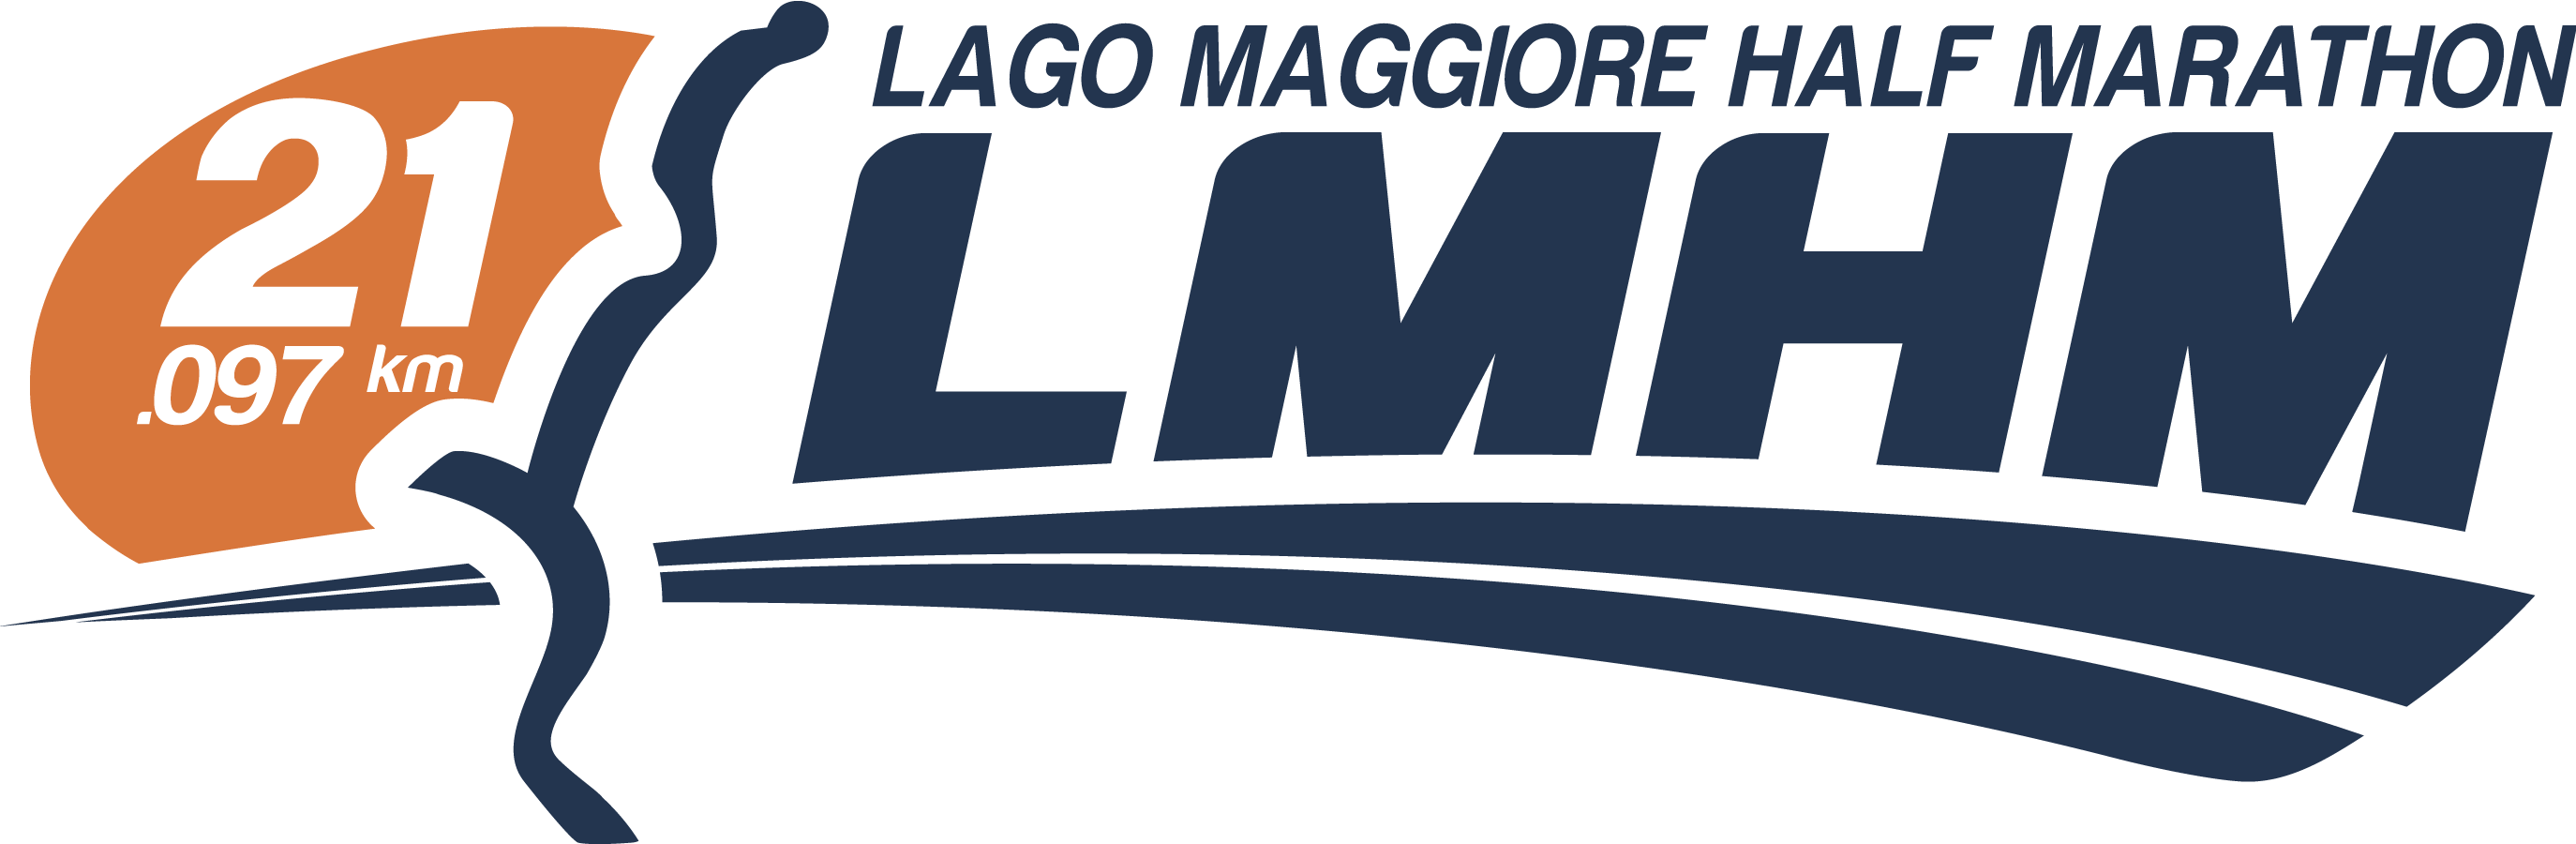 LAGO MAGGIORE HALF MARATHON XV EDIZIONE